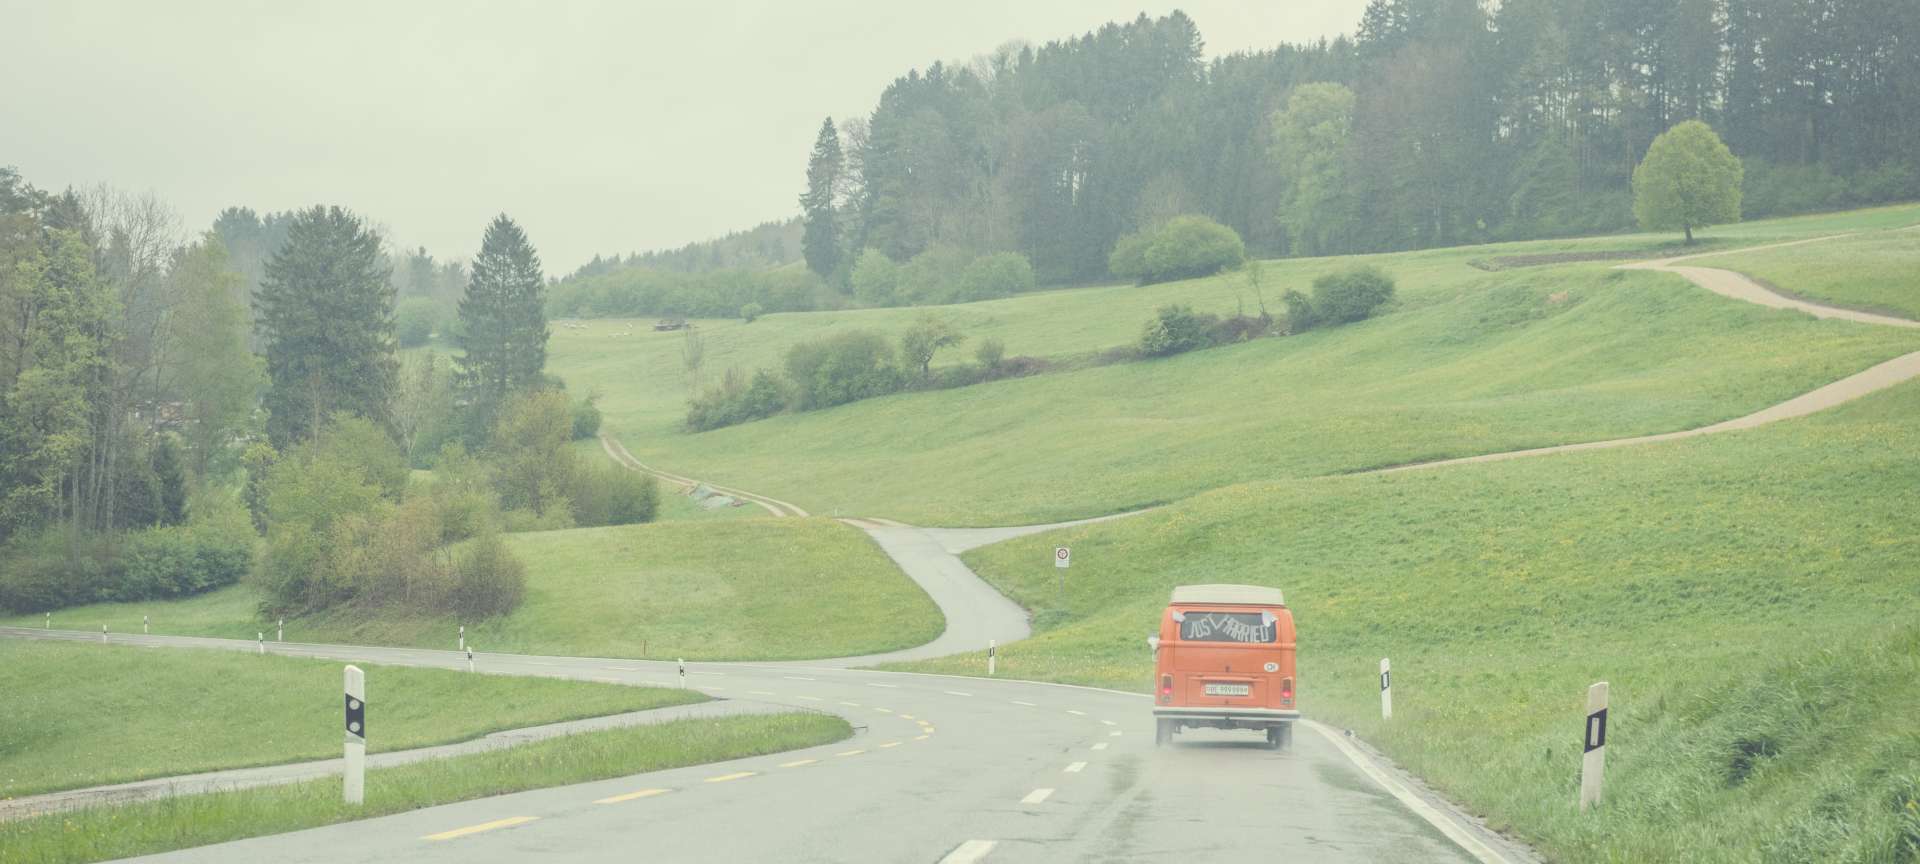 Hippie-Bus mit Just Maried Schriftzug von hinten auf Landstrasse im Kanton Zürich